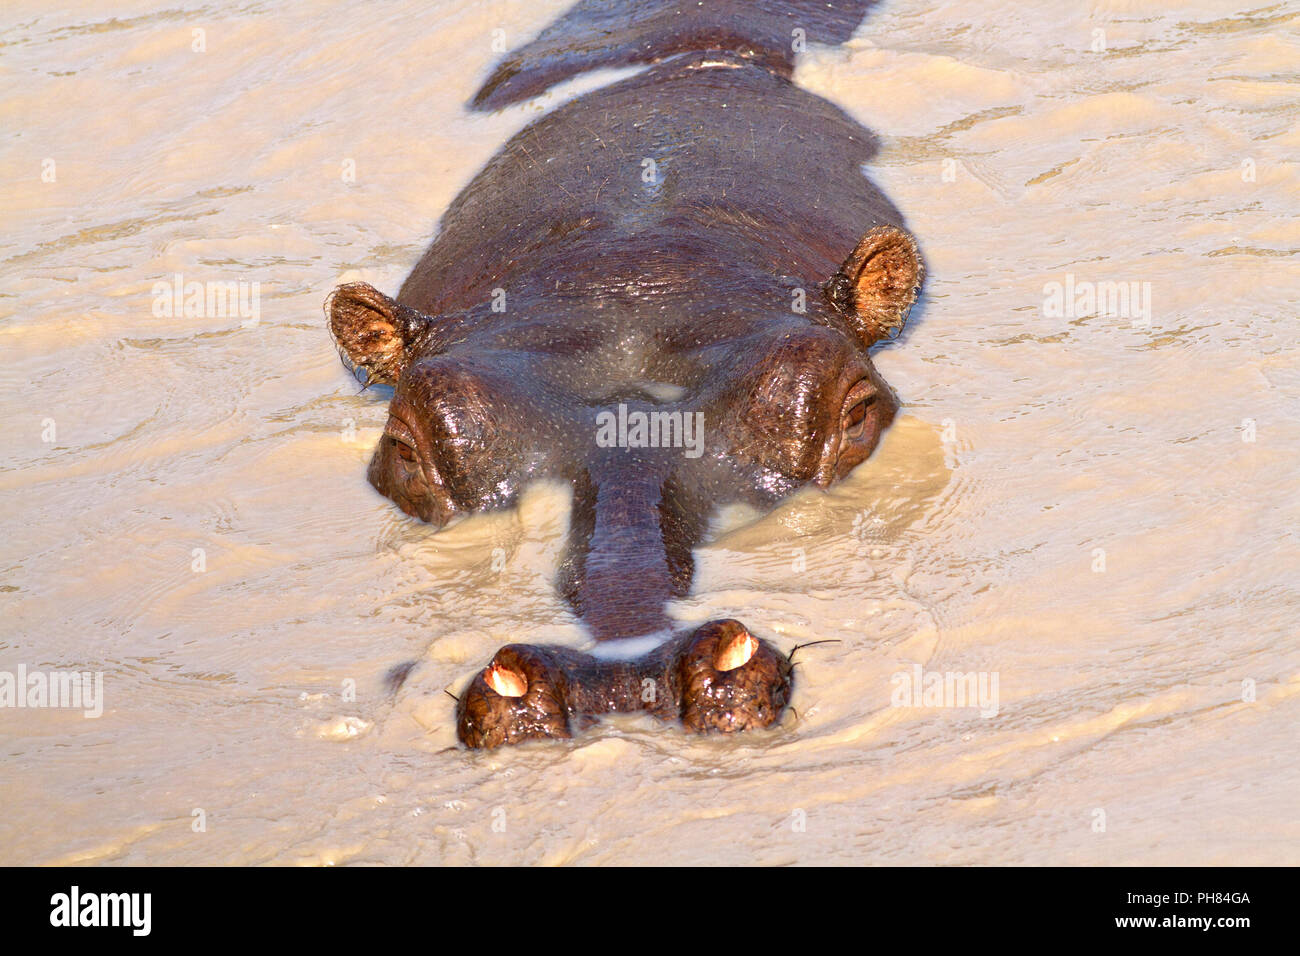 Ein semi-versenkt Hippo zeigt die klassischen Anpassung eines aquatischen Tier durch Ohren, Augen und Nase oben auf seinen Kopf so, dass die Wenigsten Stockfoto